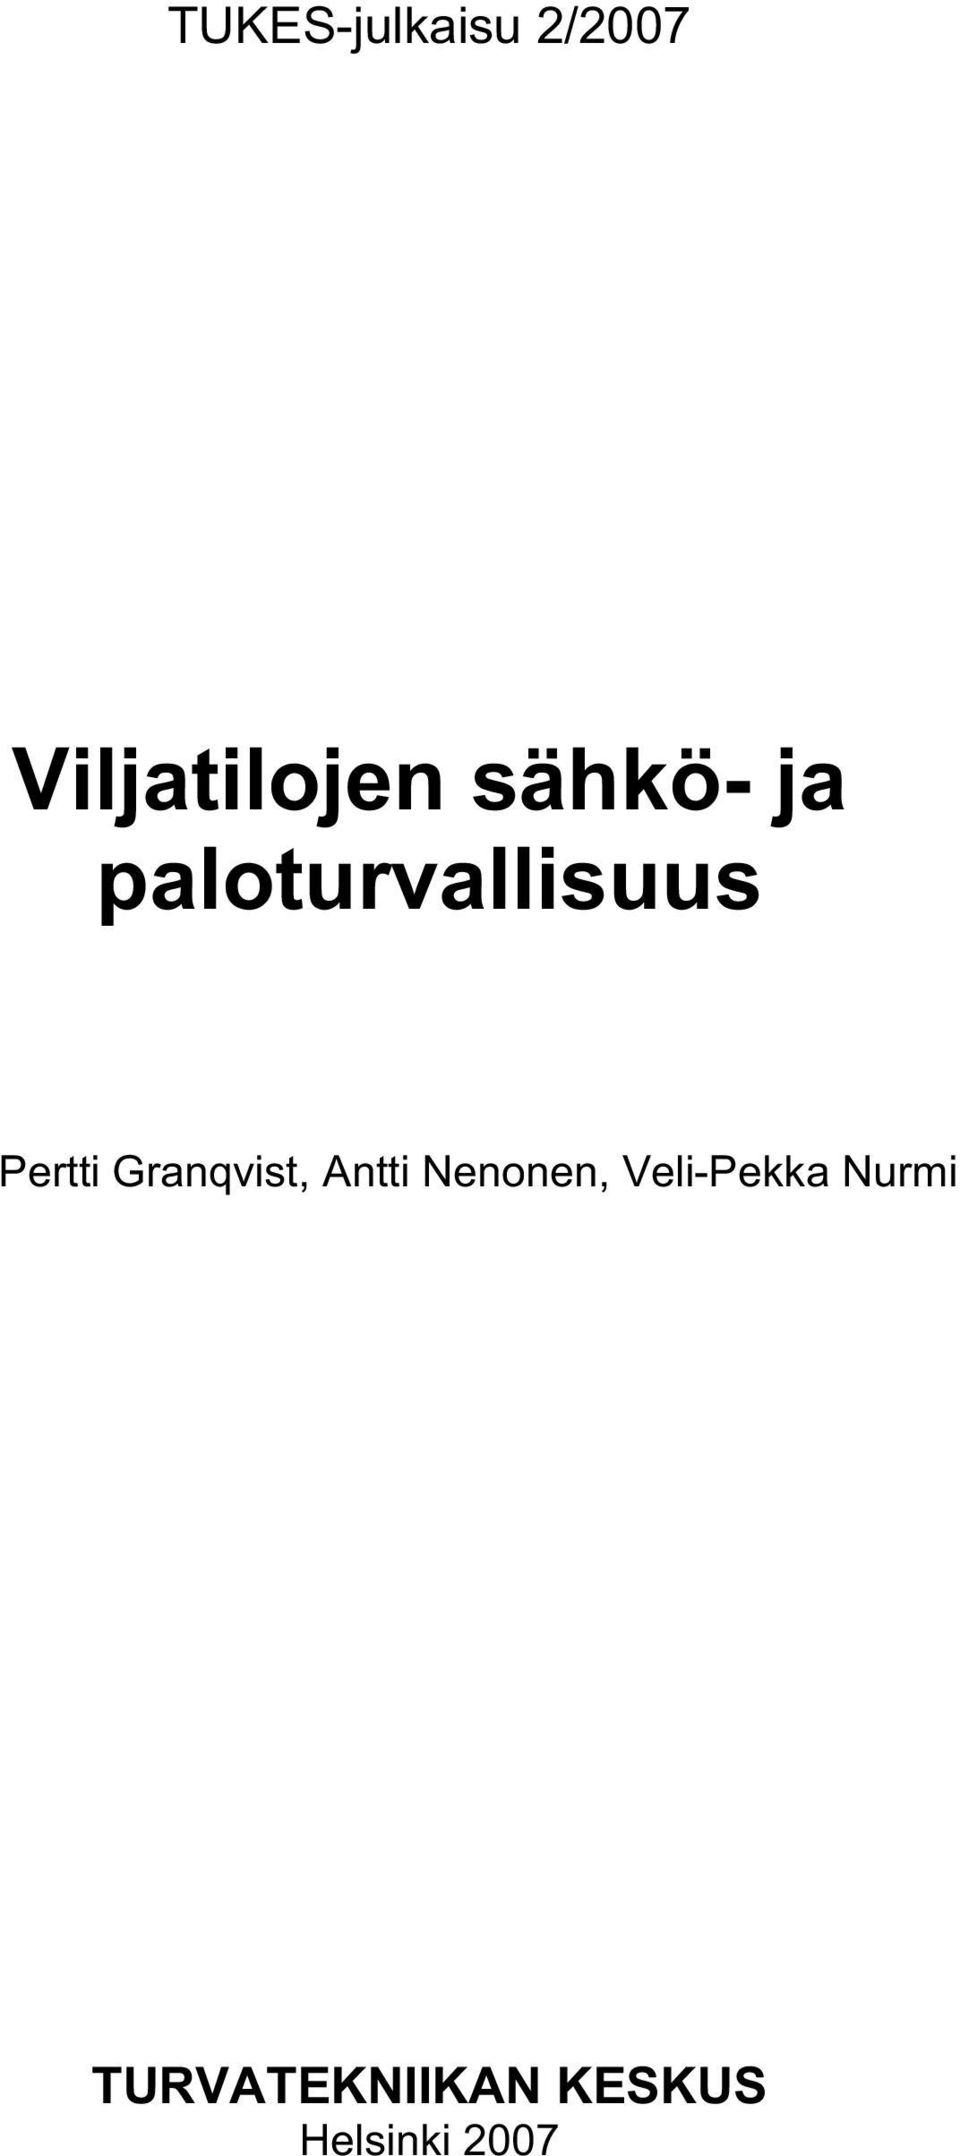 Granqvist, Antti Nenonen, Veli-Pekka